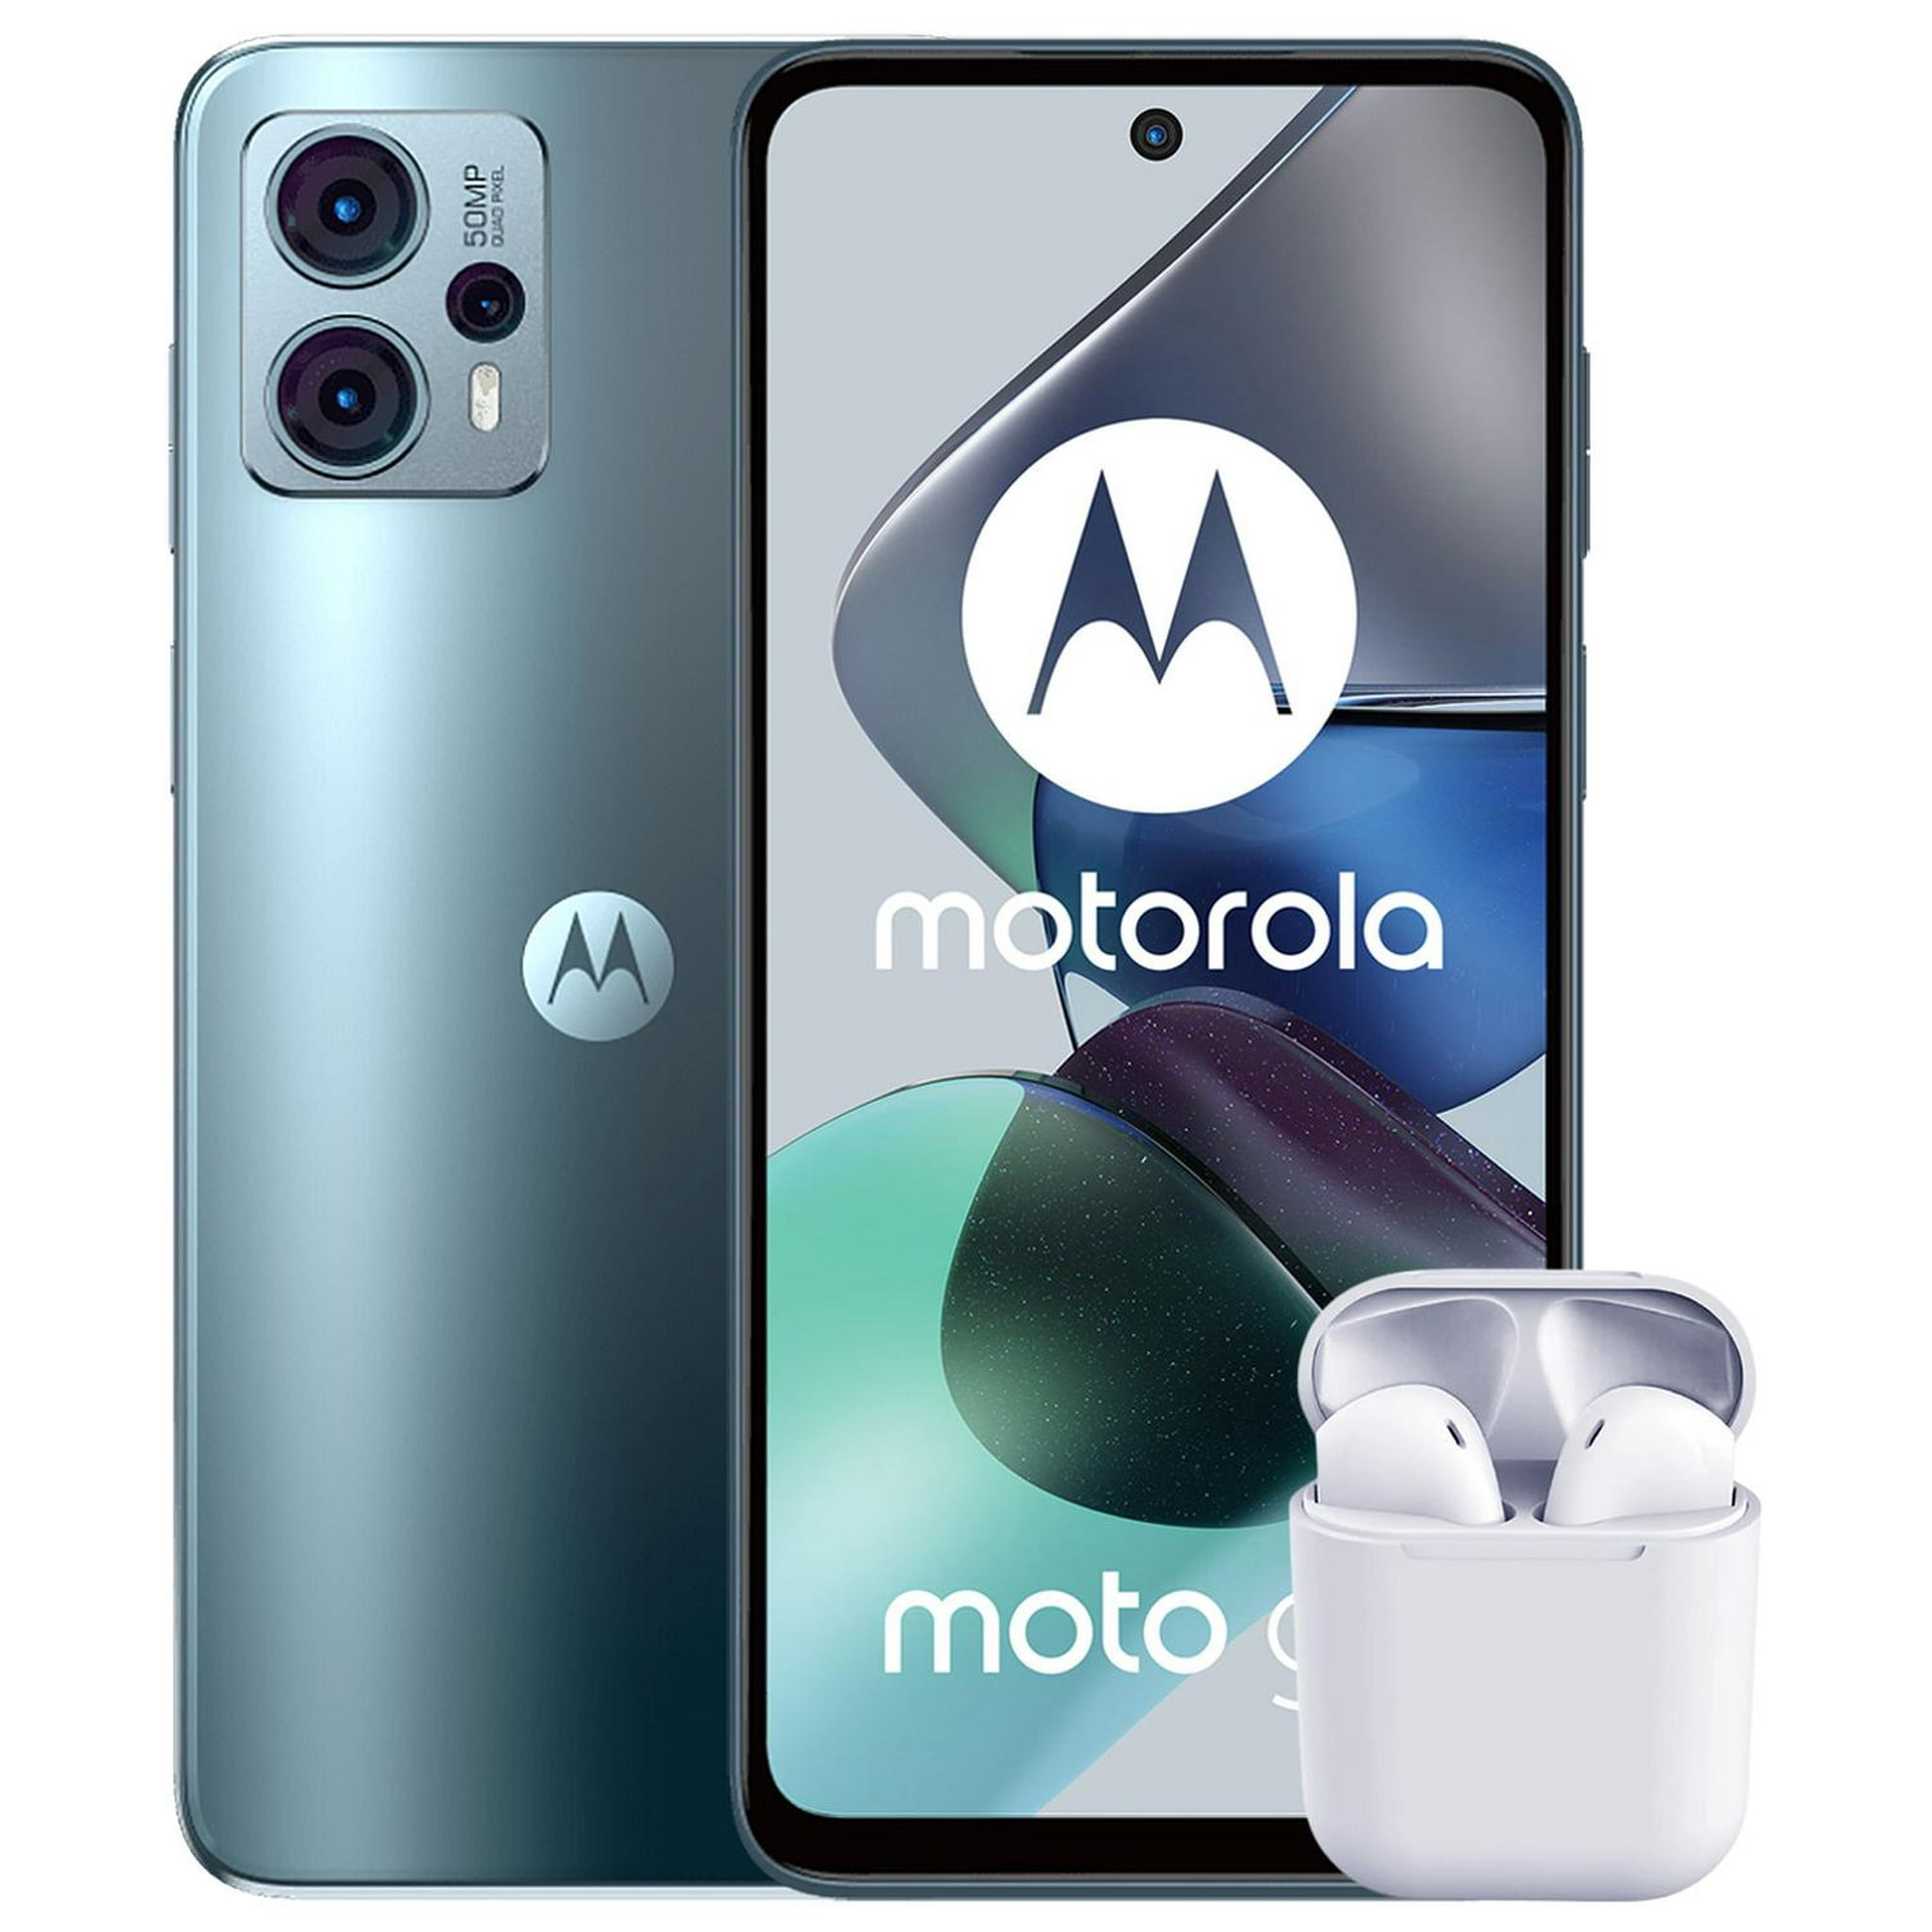 Analizamos el Motorola G23: ¿el mejor smartphone del mercado por 149 euros?